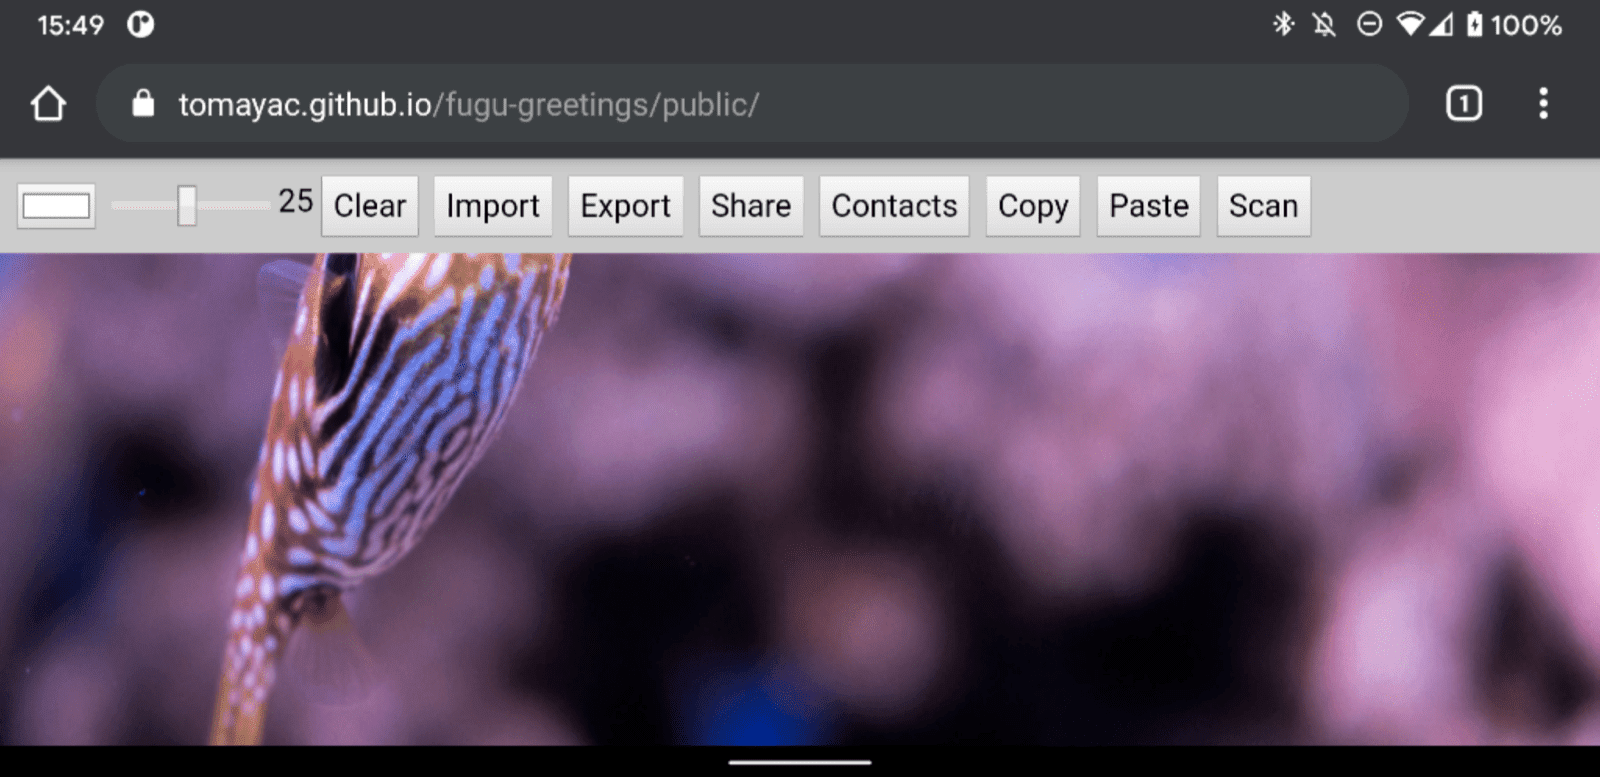 Fugu Greetings in esecuzione su Chrome per Android che mostra molte funzionalità disponibili.